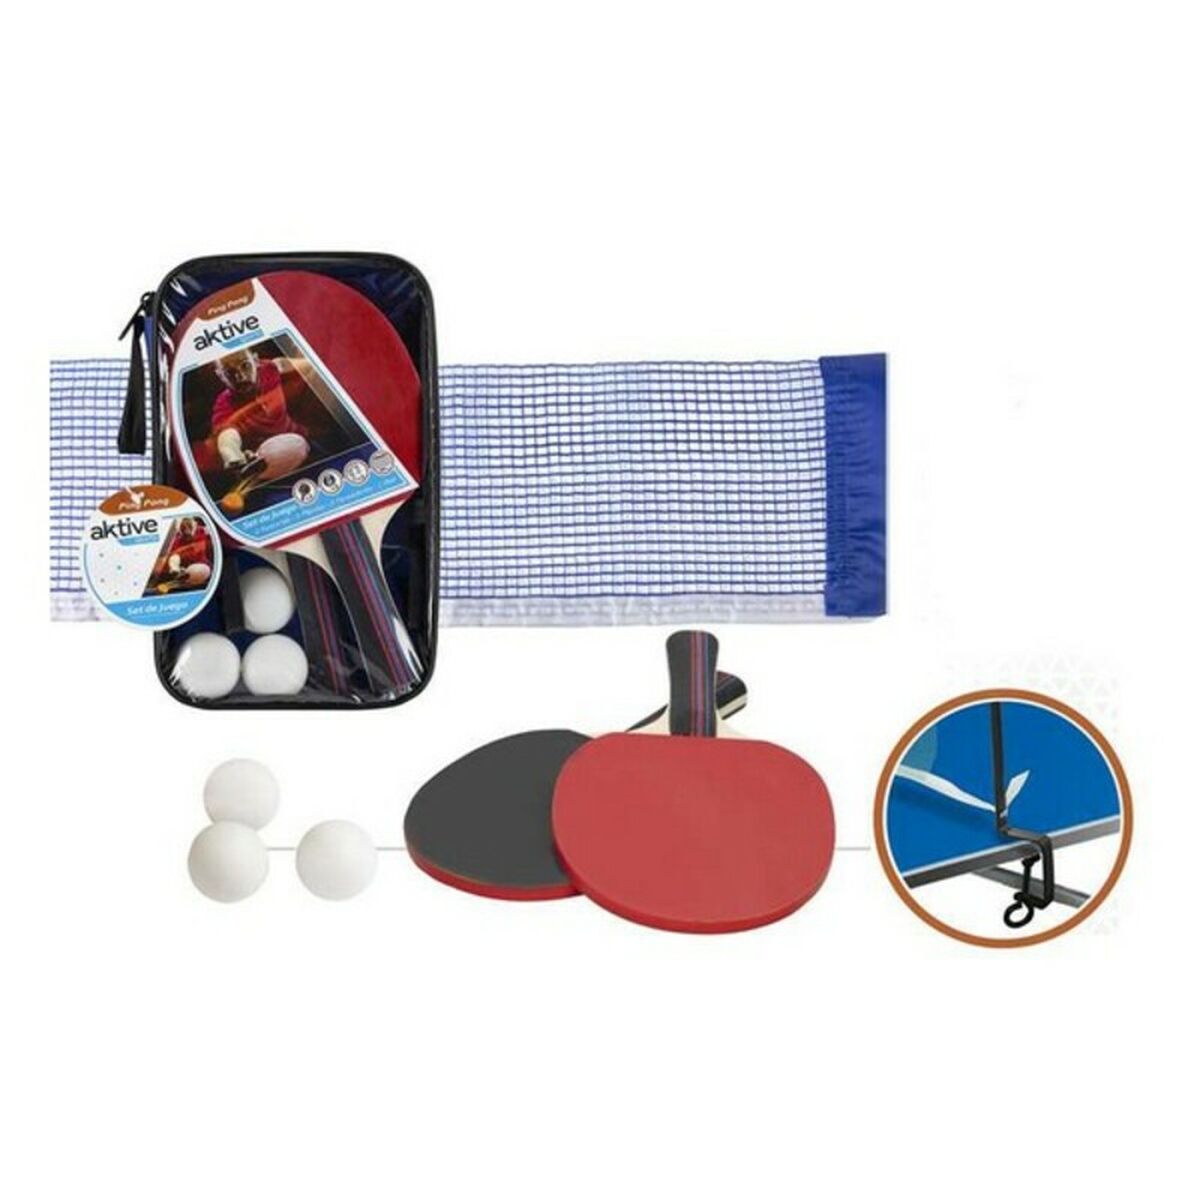 Set Ping Pong Aktive Sports Aktive (6 pcs)